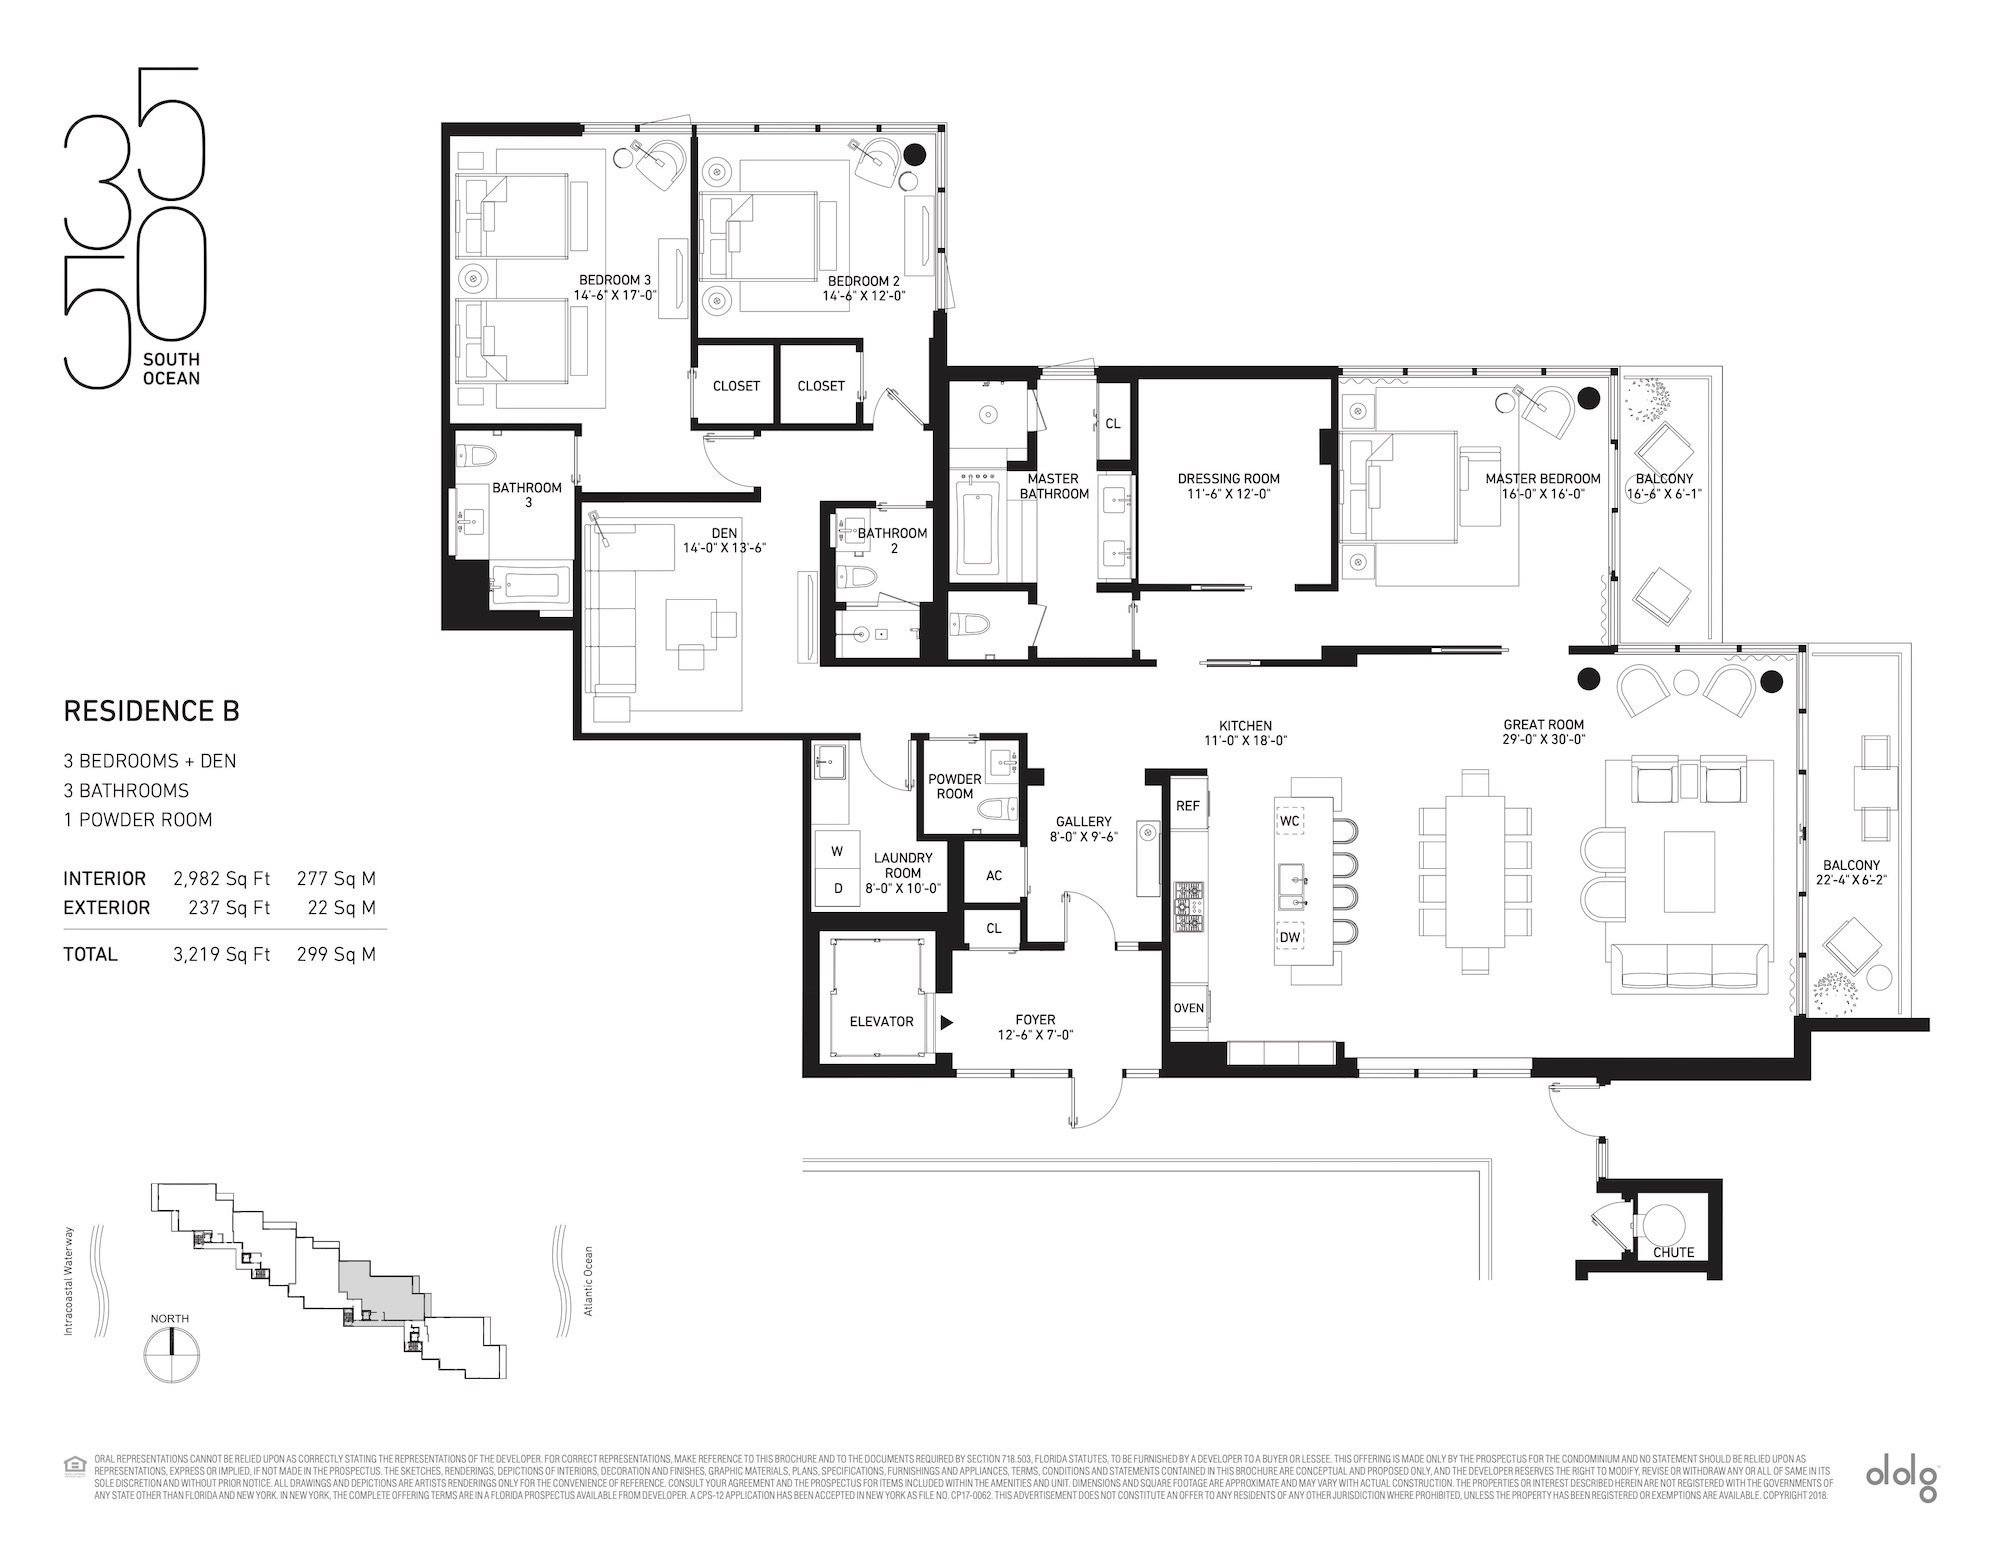 Floor Plan for 3550 South Ocean Floorplans, Residence B